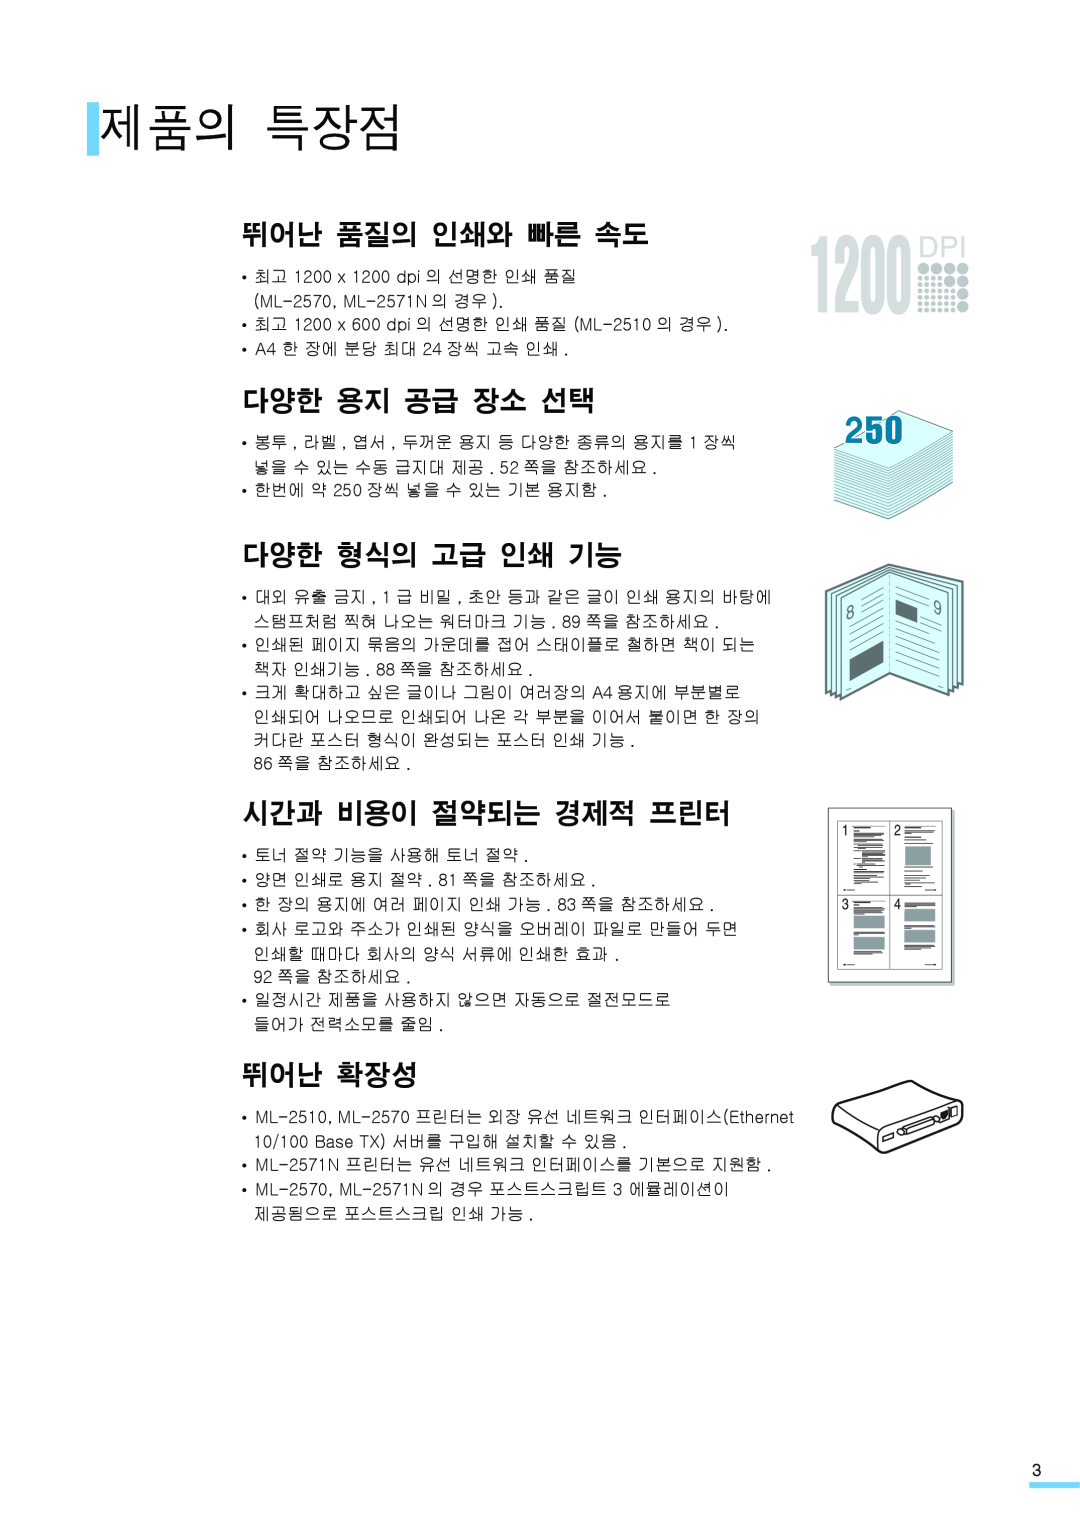 Samsung ML-2571N manual 제품의 특장점, 뛰어난 품질의 인쇄와 빠른 속도, 다양한 용지 공급 장소 선택, 다양한 형식의 고급 인쇄 기능, 시간과 비용이 절약되는 경제적 프린터, 뛰어난 확장성 